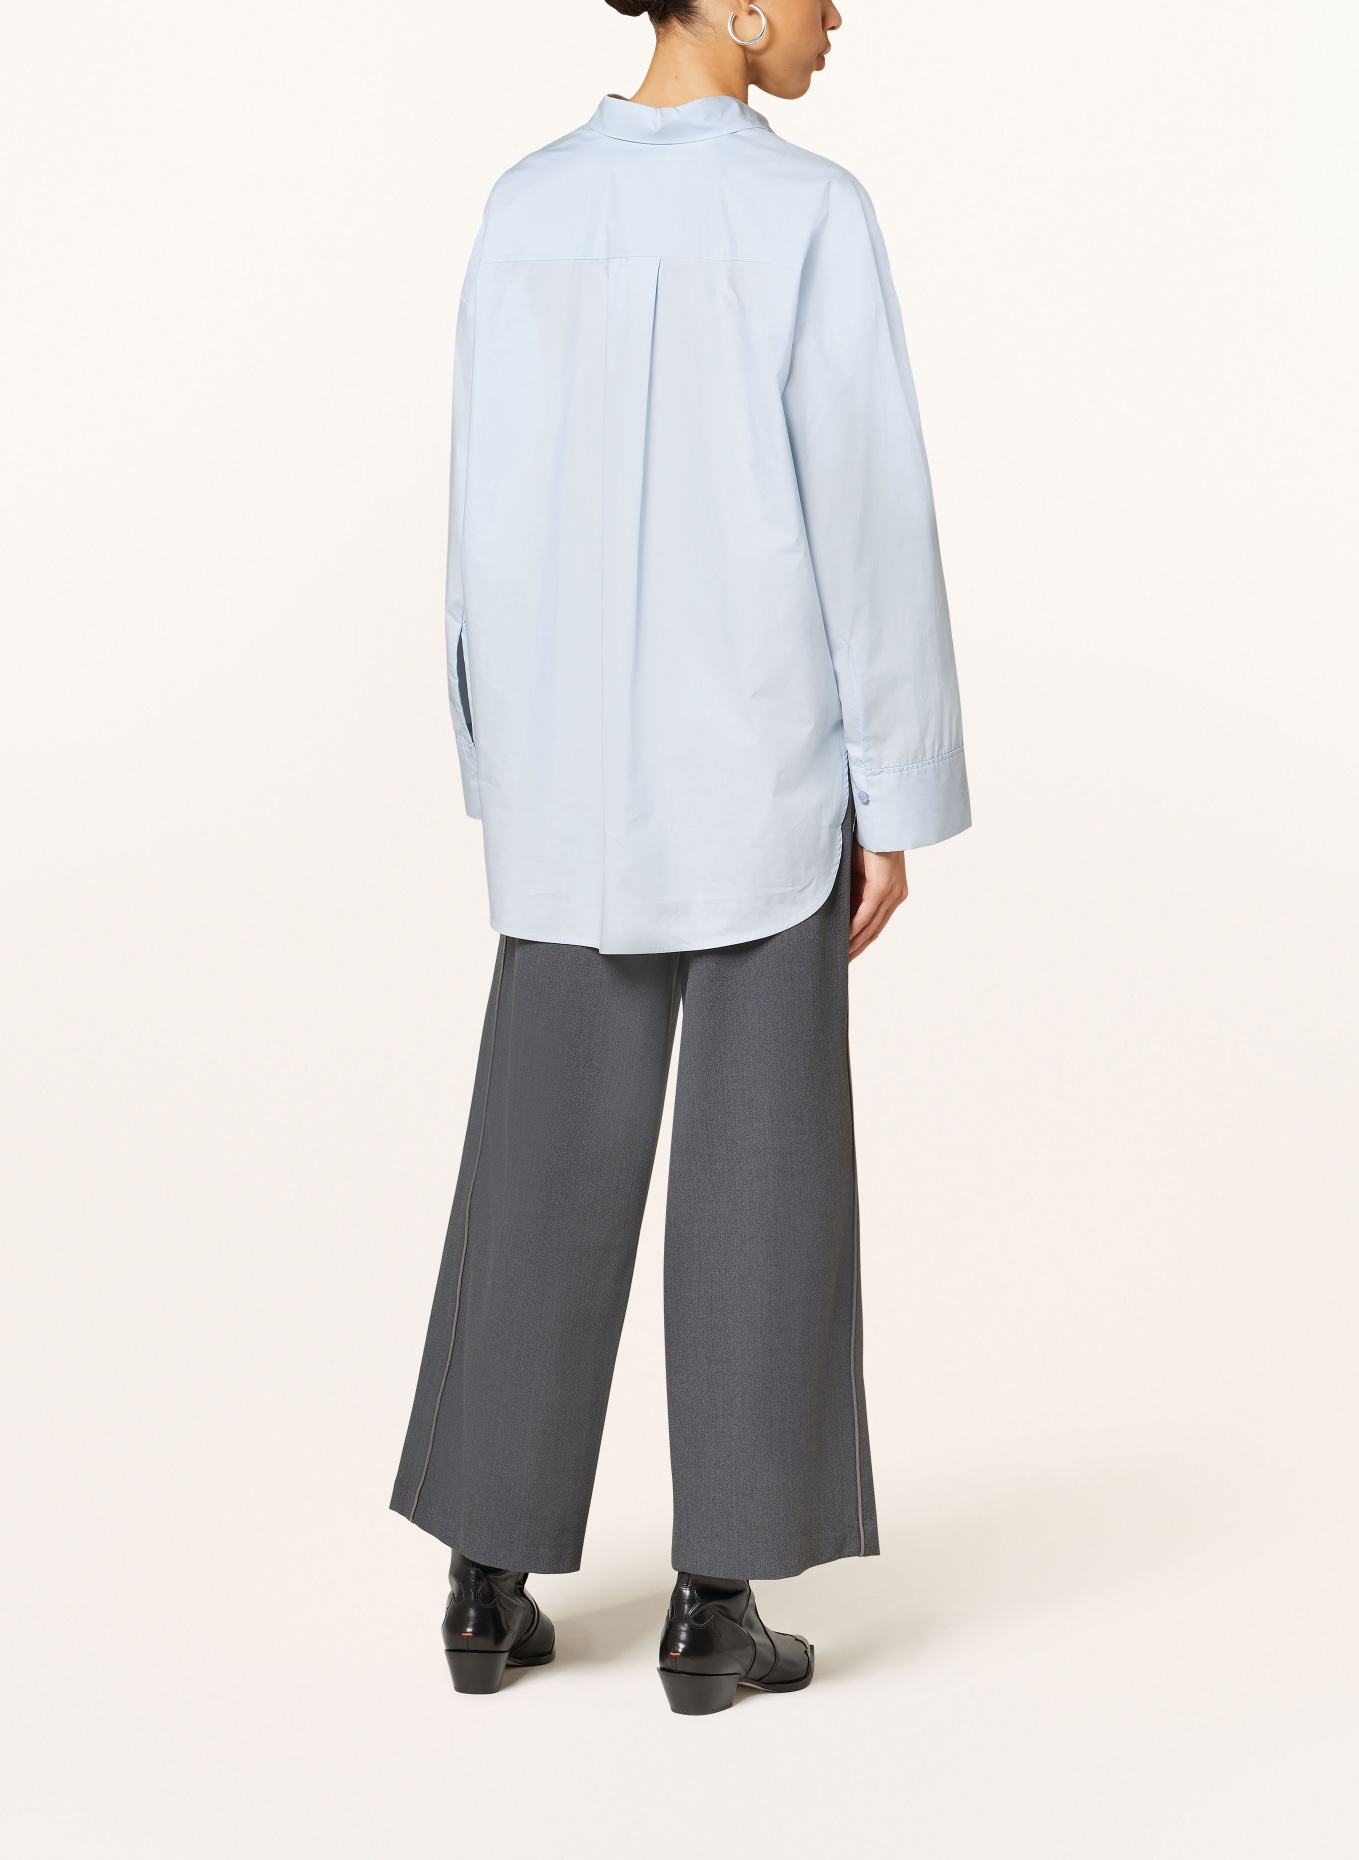 BY MALENE BIRGER Shirt blouse DERRIS, Color: LIGHT BLUE (Image 3)